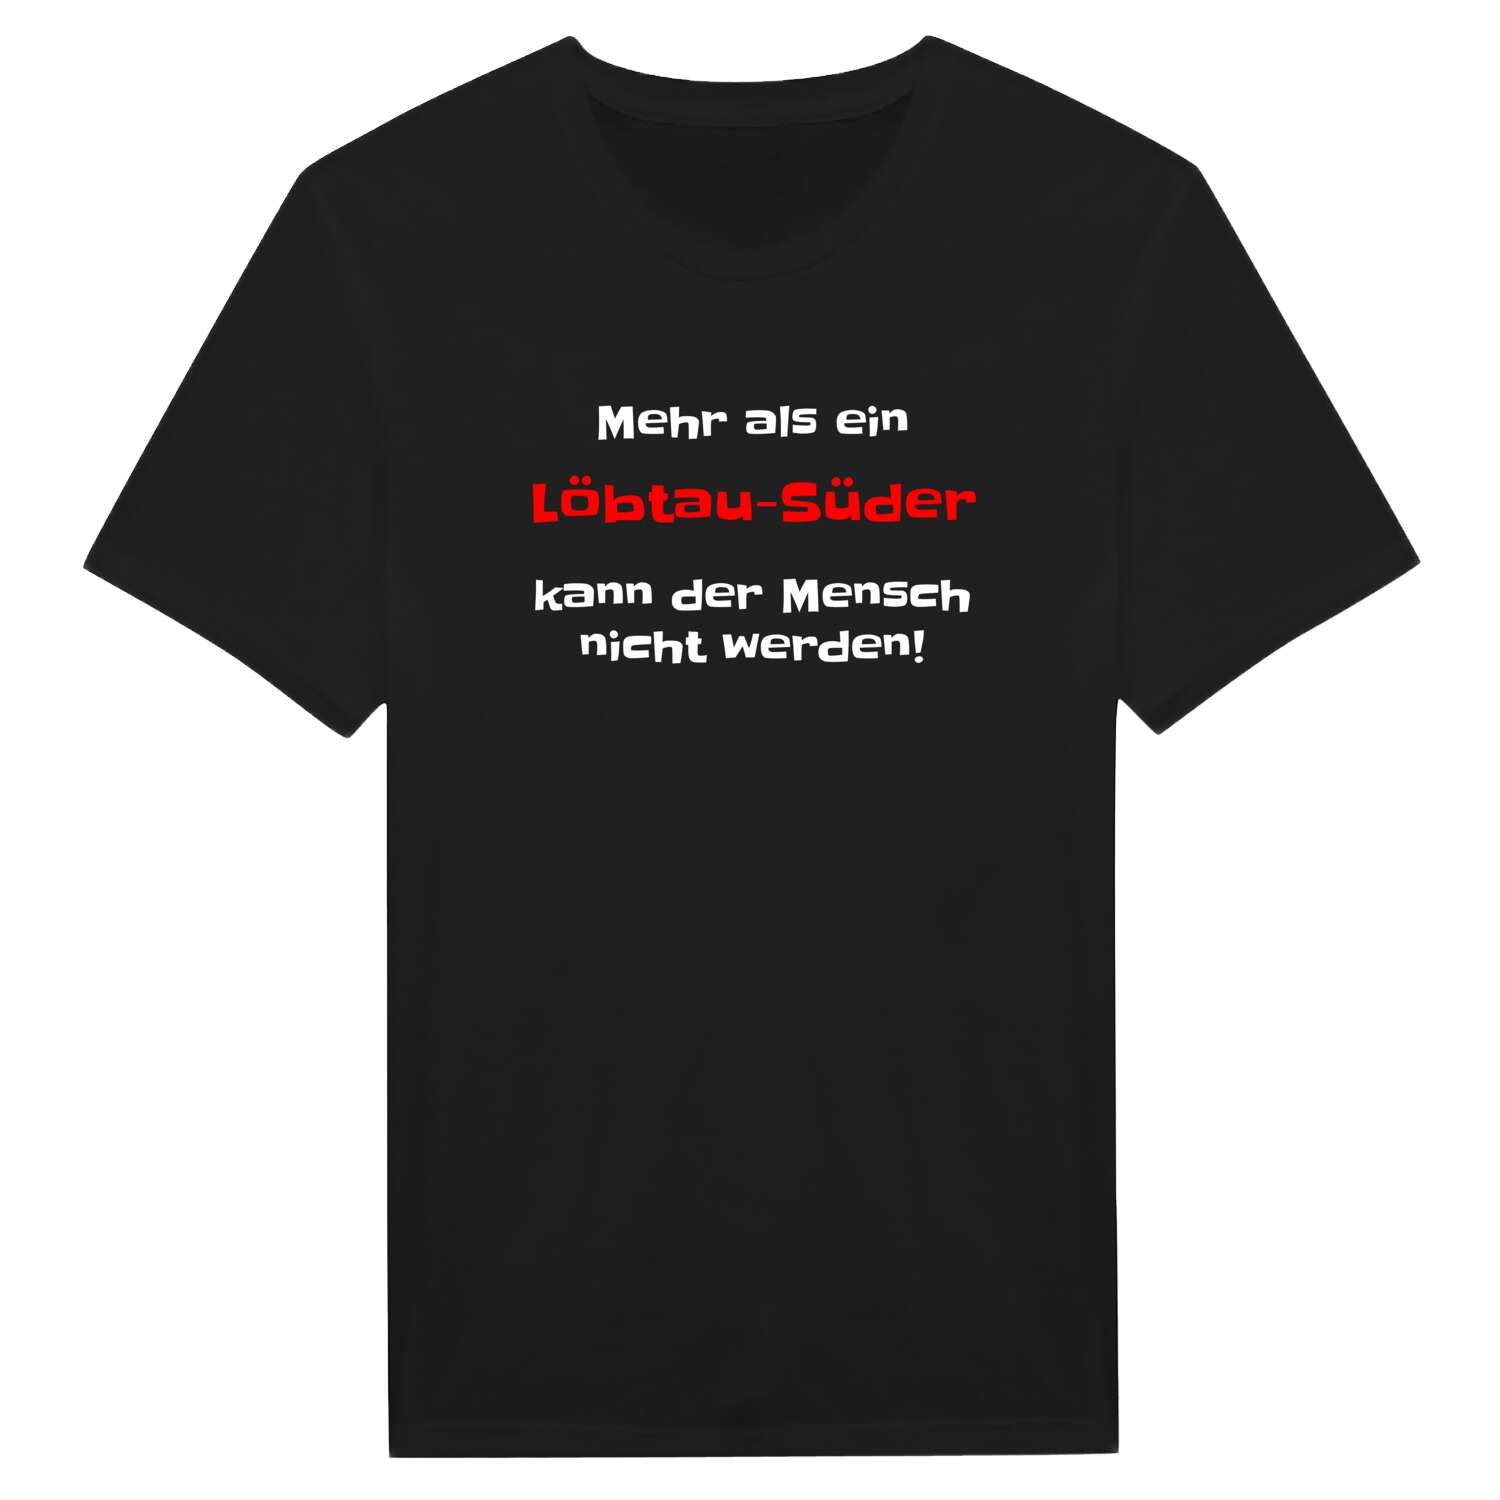 Löbtau-Süd T-Shirt »Mehr als ein«